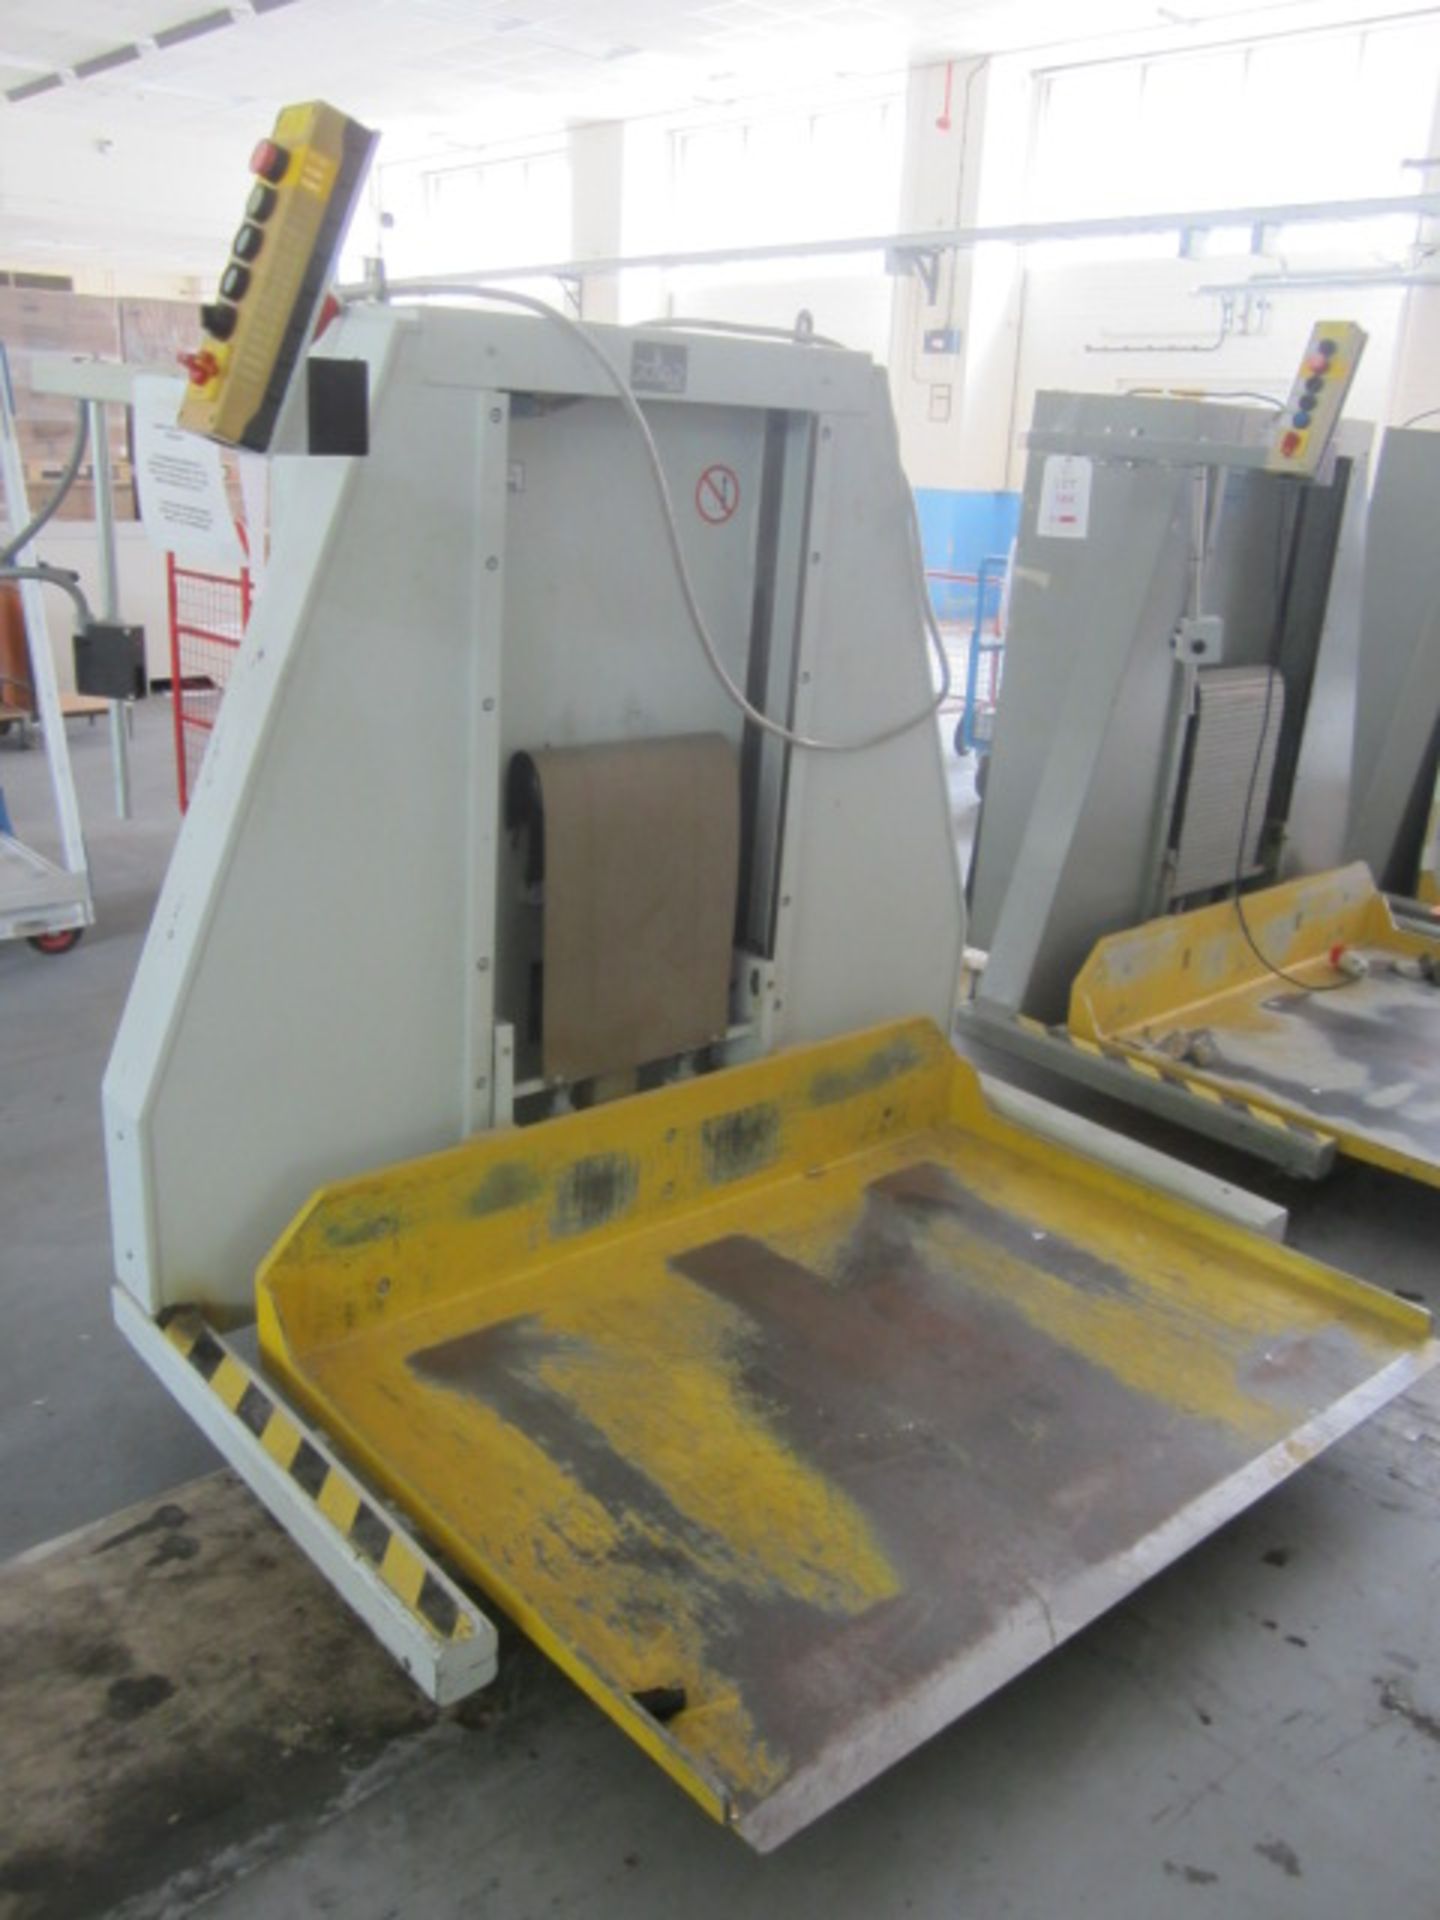 Polar Mohr paper lift, model L100-W-6, machine number 637/2037 (1996), pallet size 1480mm x